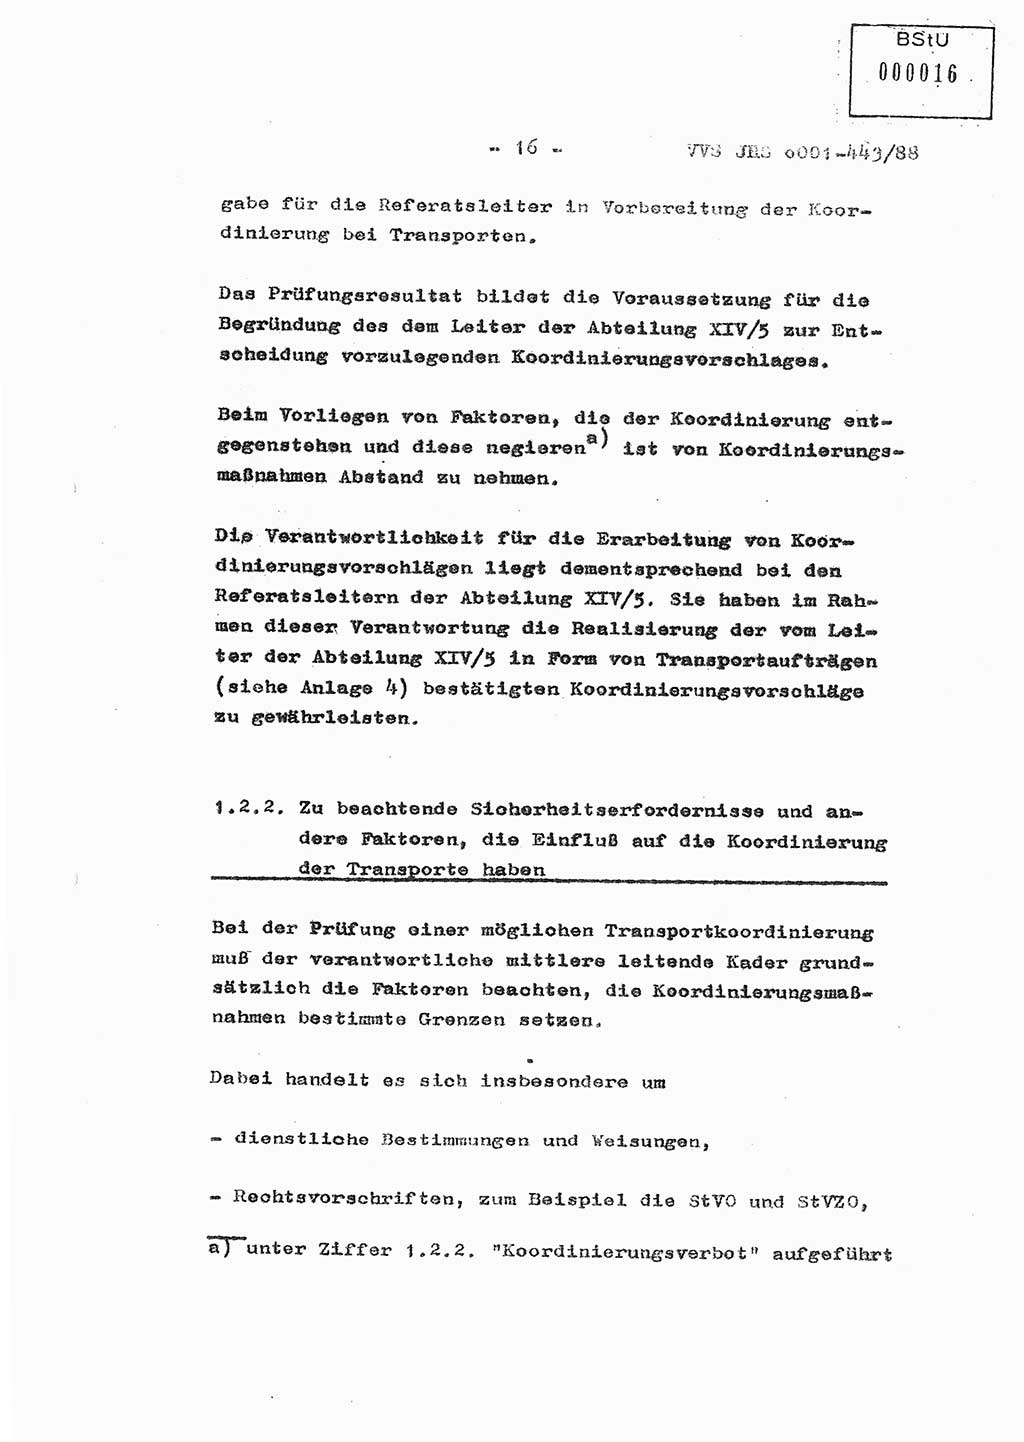 Diplomarbeit Hauptmann Michael Rast (Abt. ⅩⅣ), Major Bernd Rahaus (Abt. ⅩⅣ), Ministerium für Staatssicherheit (MfS) [Deutsche Demokratische Republik (DDR)], Juristische Hochschule (JHS), Vertrauliche Verschlußsache (VVS) o001-443/88, Potsdam 1988, Seite 16 (Dipl.-Arb. MfS DDR JHS VVS o001-443/88 1988, S. 16)